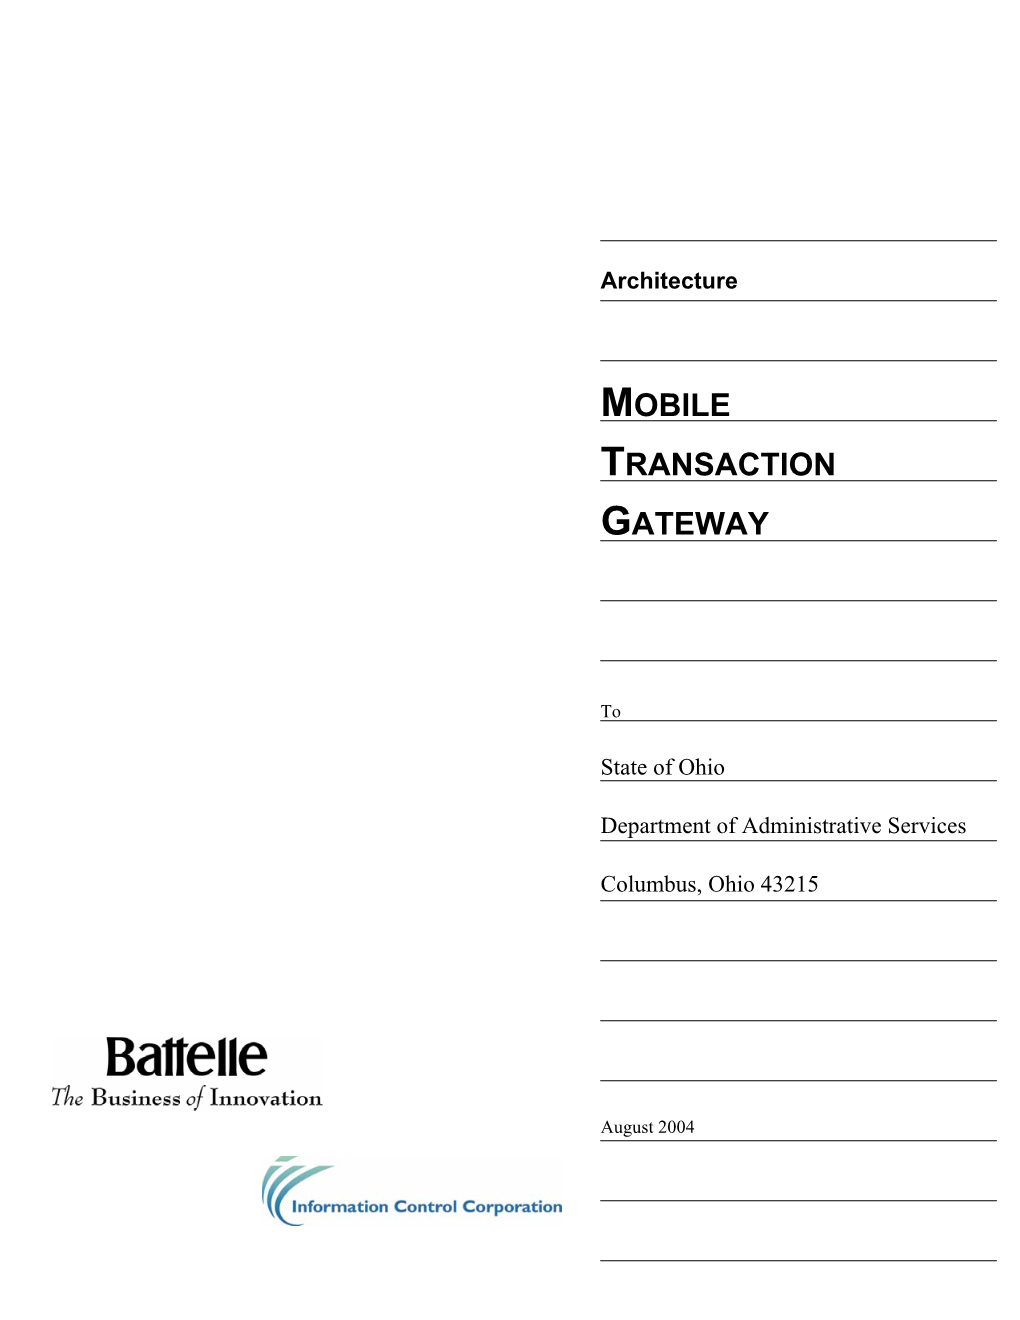 Mobile Transaction Gateway